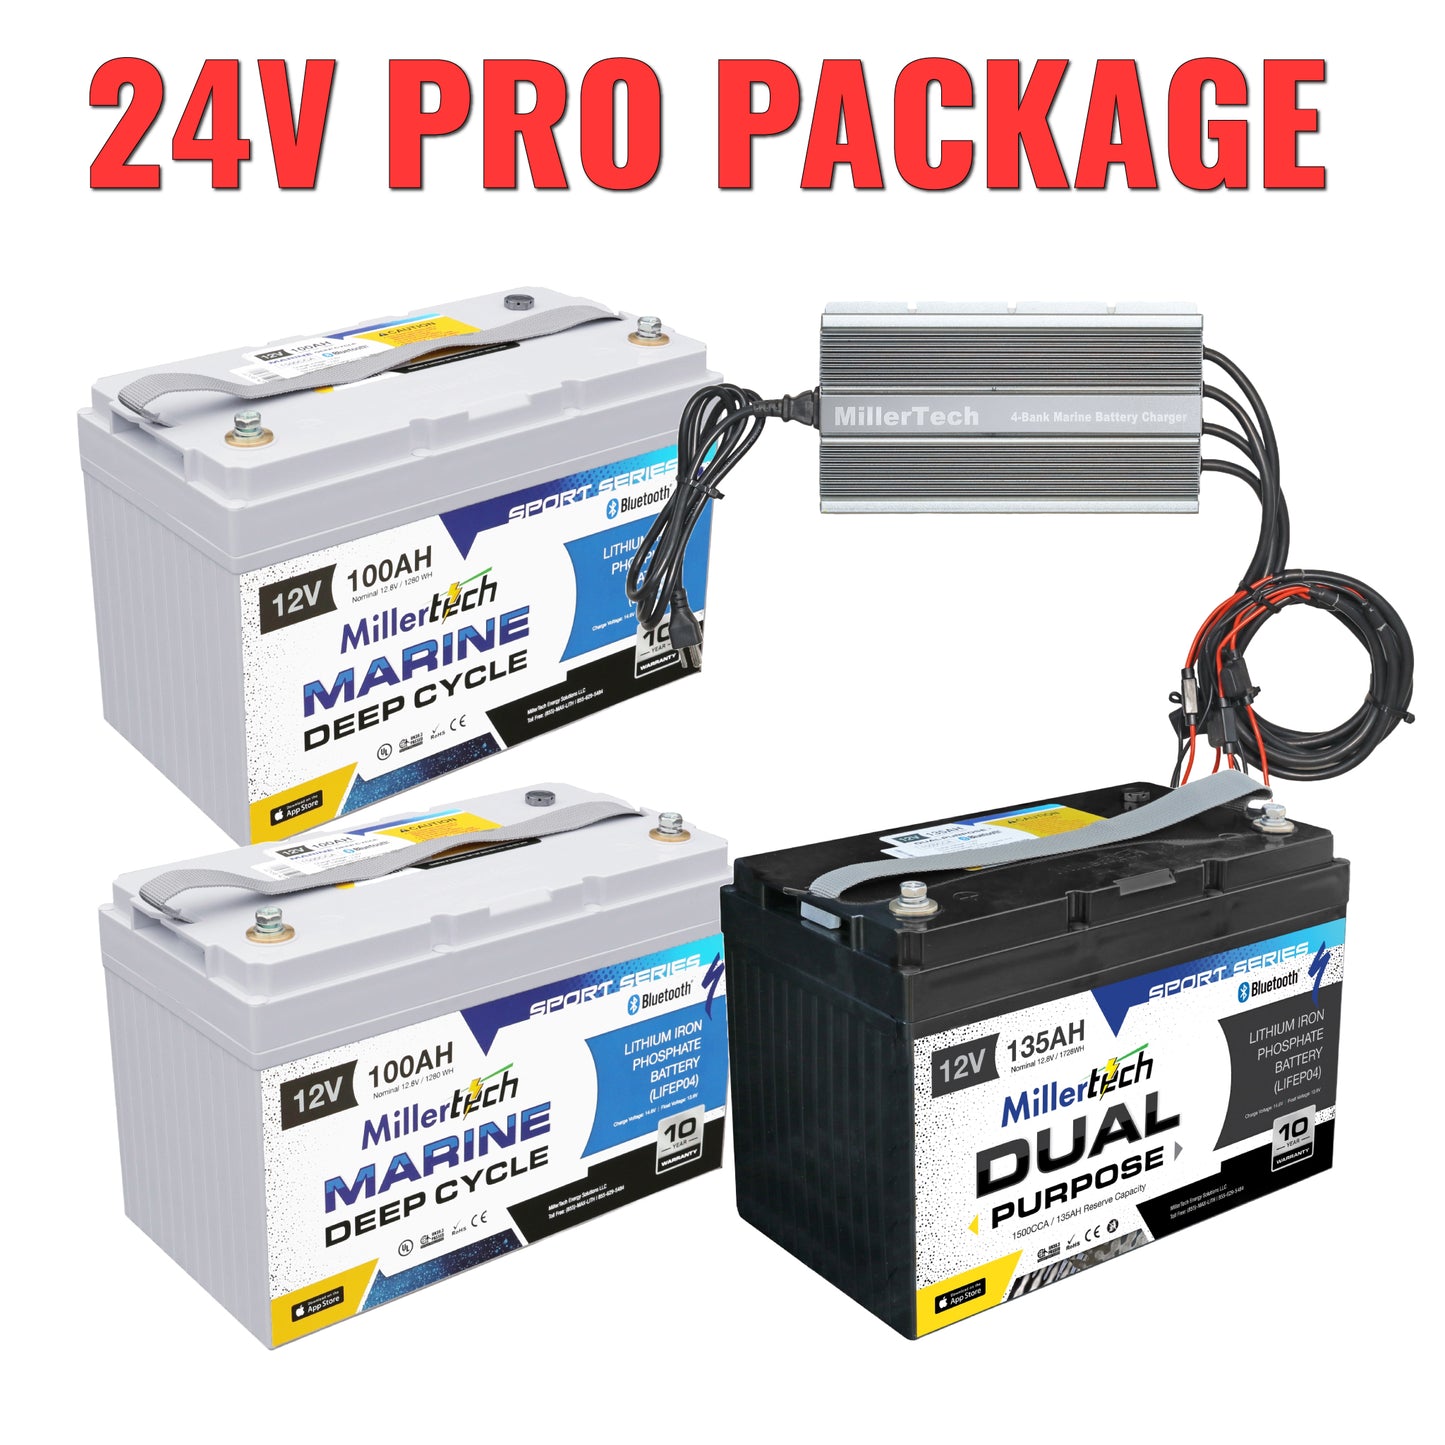 24V Pro Package